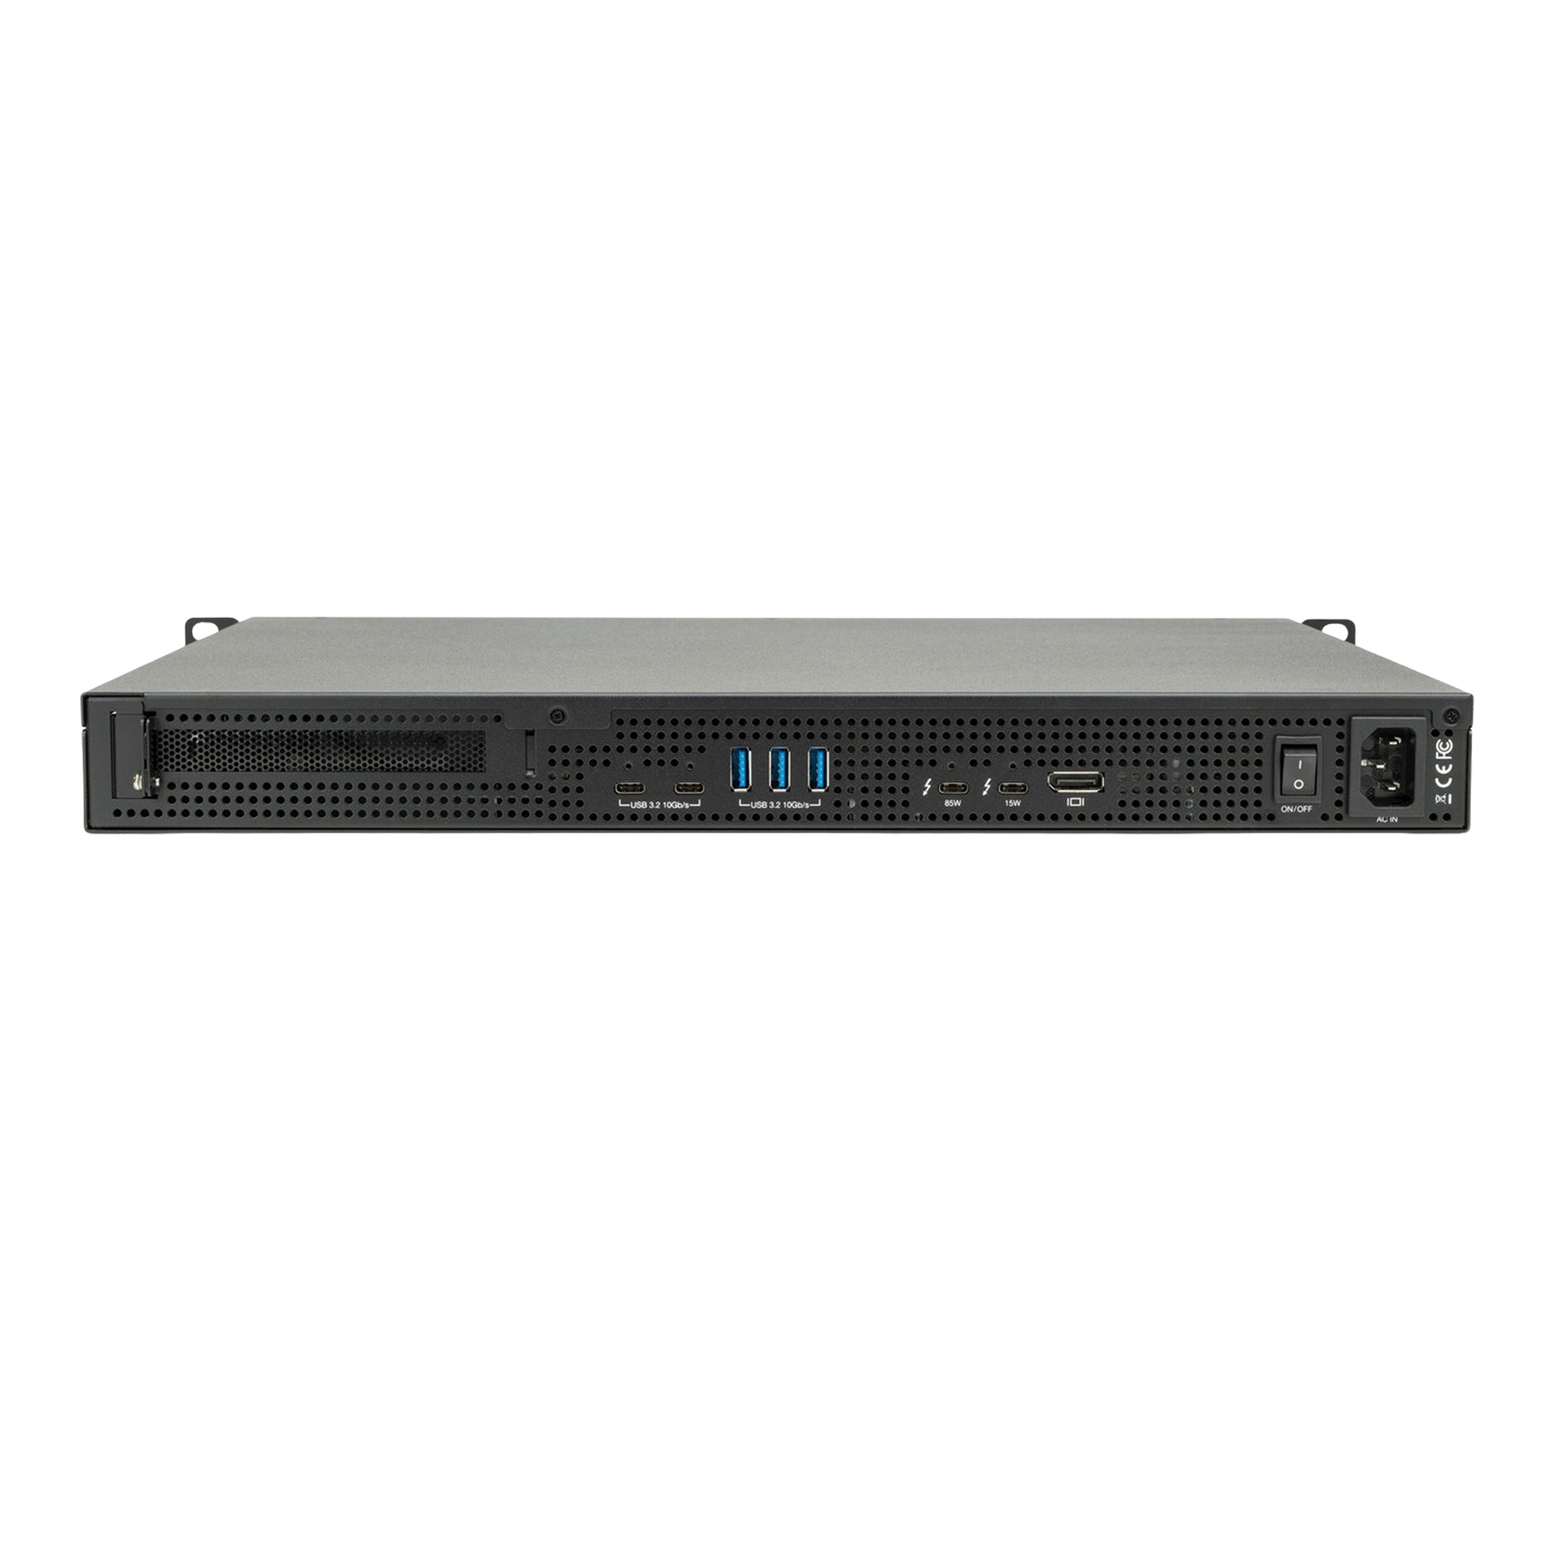 OWC 64TB (4 x 16TB HDD) Flex 1U4 4-Bay Rackmount Thunderbolt Storage, Docking & PCIe Expansion Solution